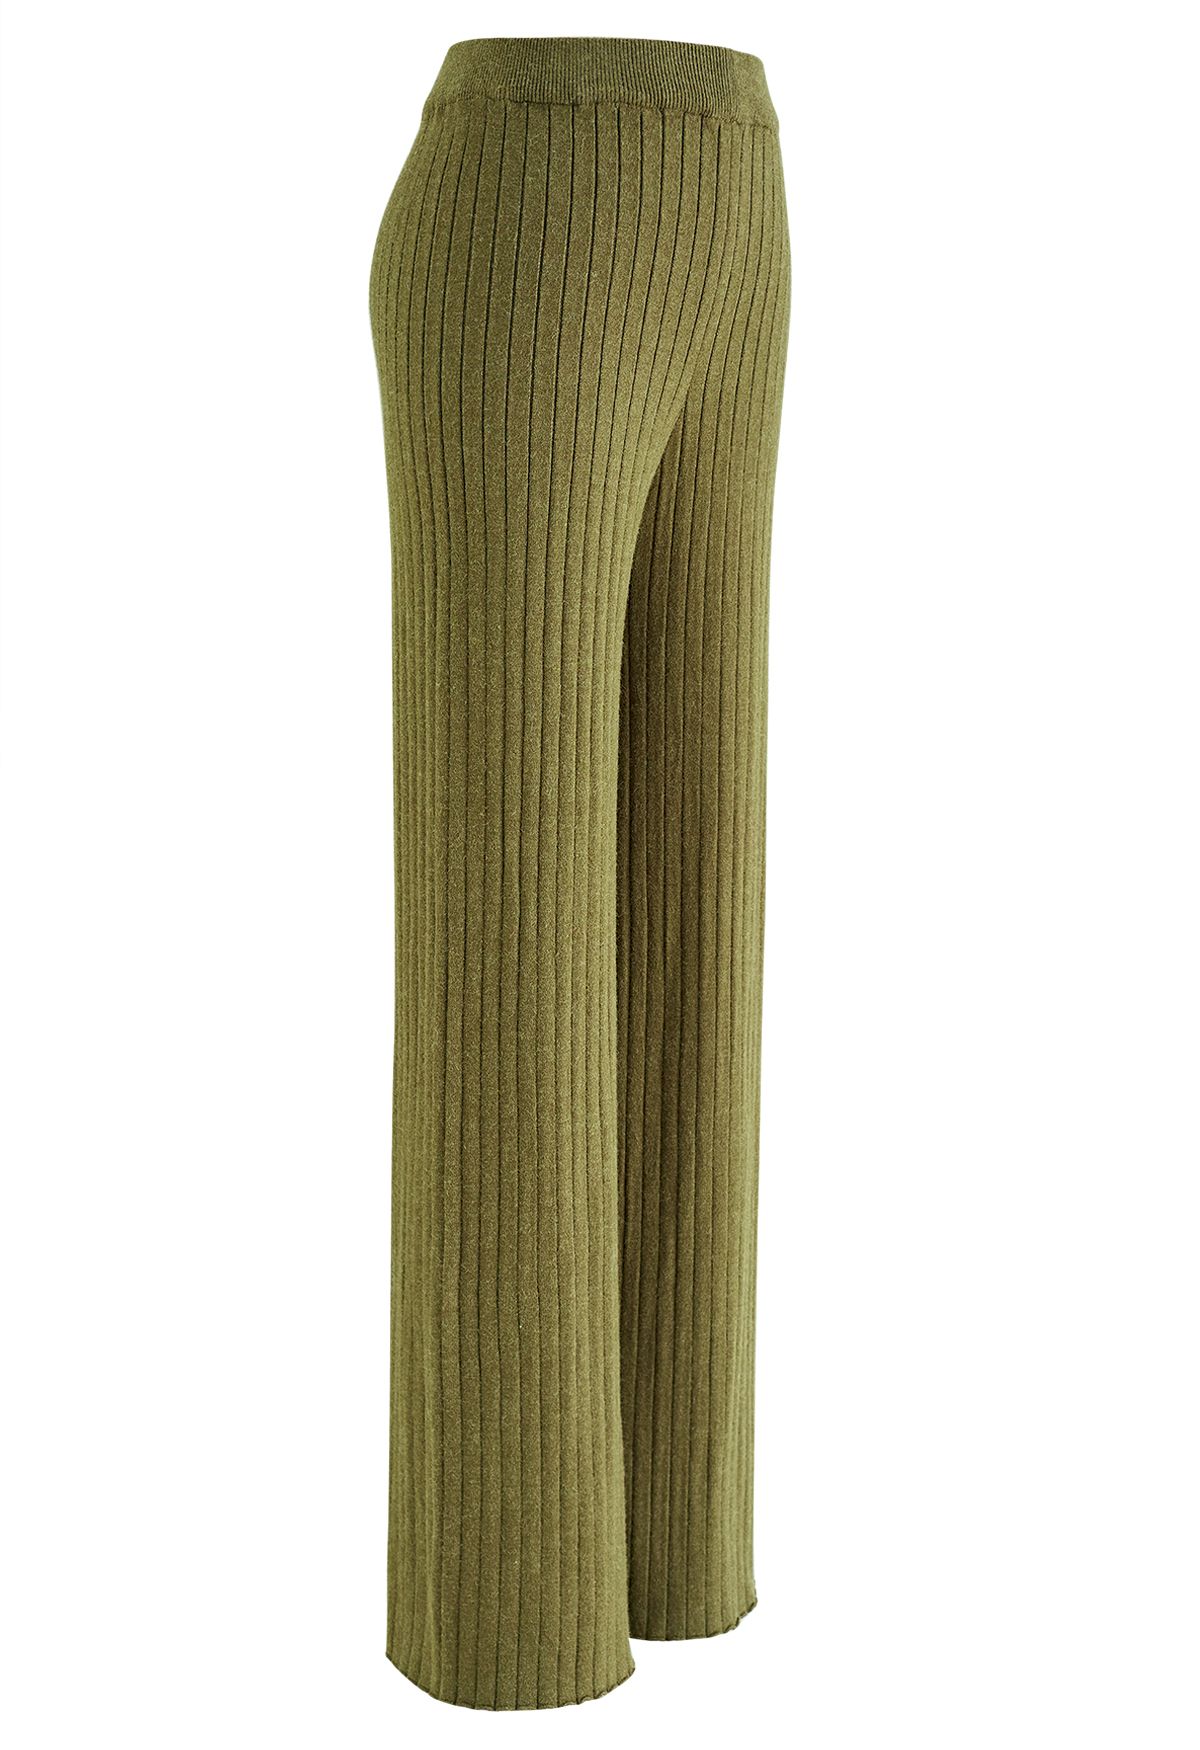 Pantalon en tricot côtelé à jambe droite en vert mousse